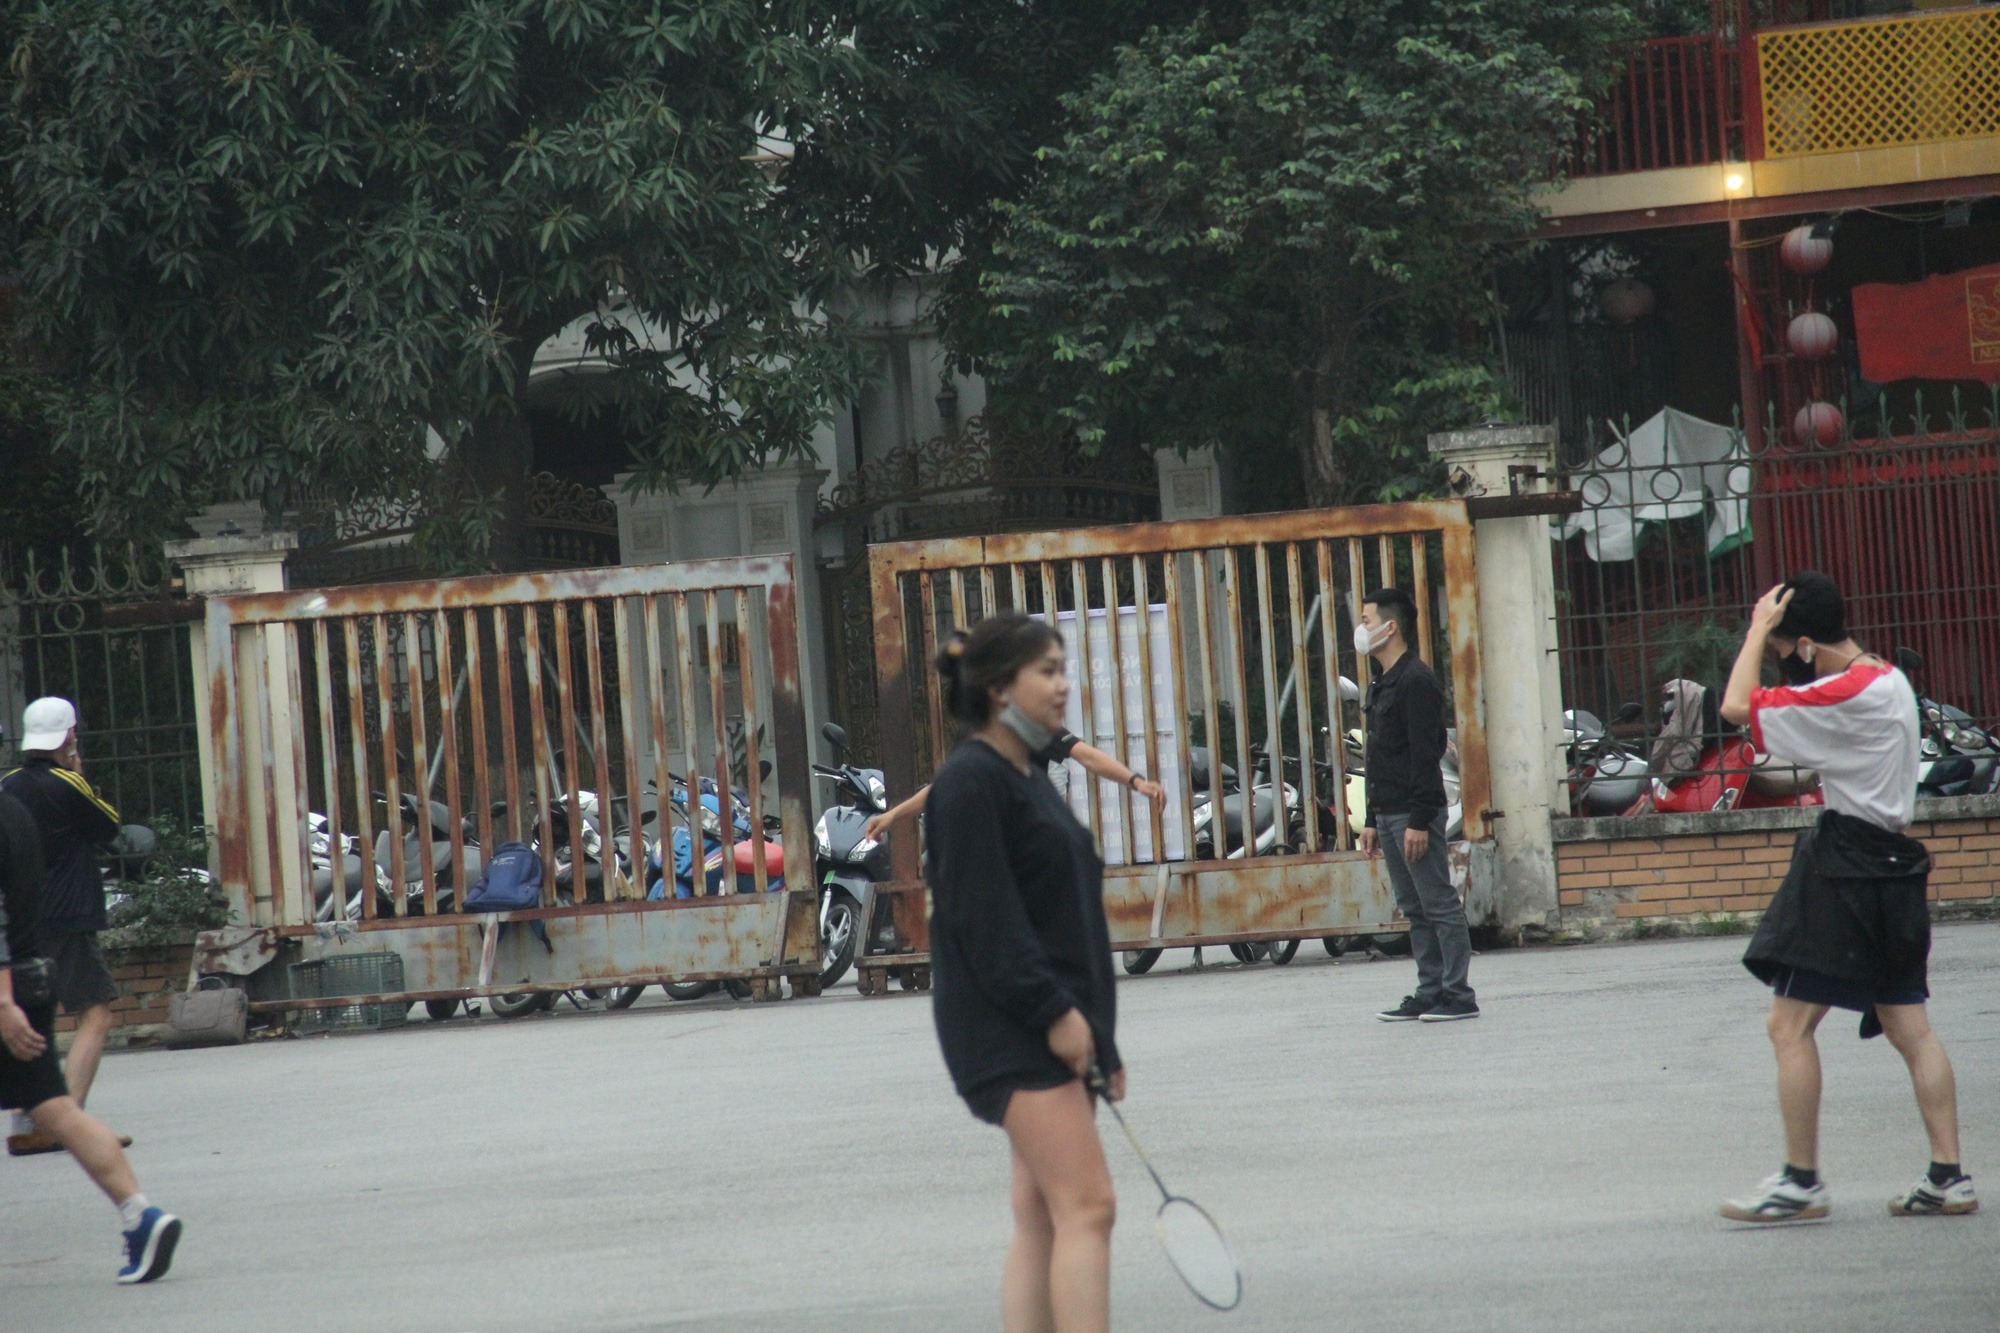 ẢNH: Bất chấp quy định xử phạt hành chính, nhiều người dân ở Hà Nội và Sài Gòn vẫn không đeo khẩu trang đến công viên tập thể dục - Ảnh 6.